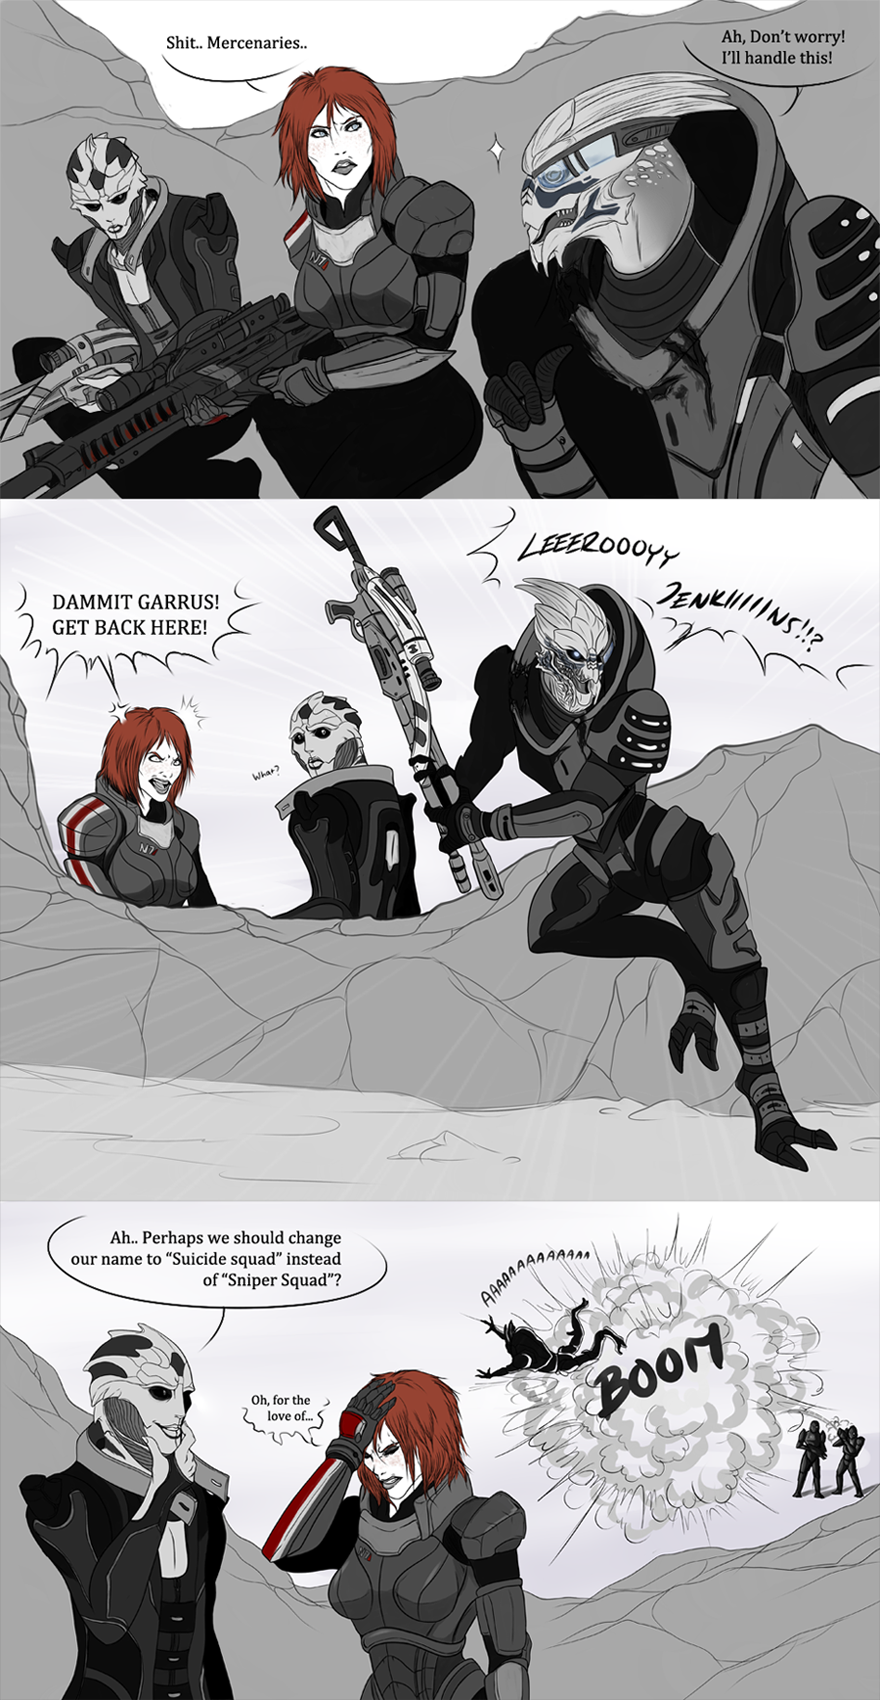 Dammit, Garrus... (Mass Effect) by Barguest on DeviantArt